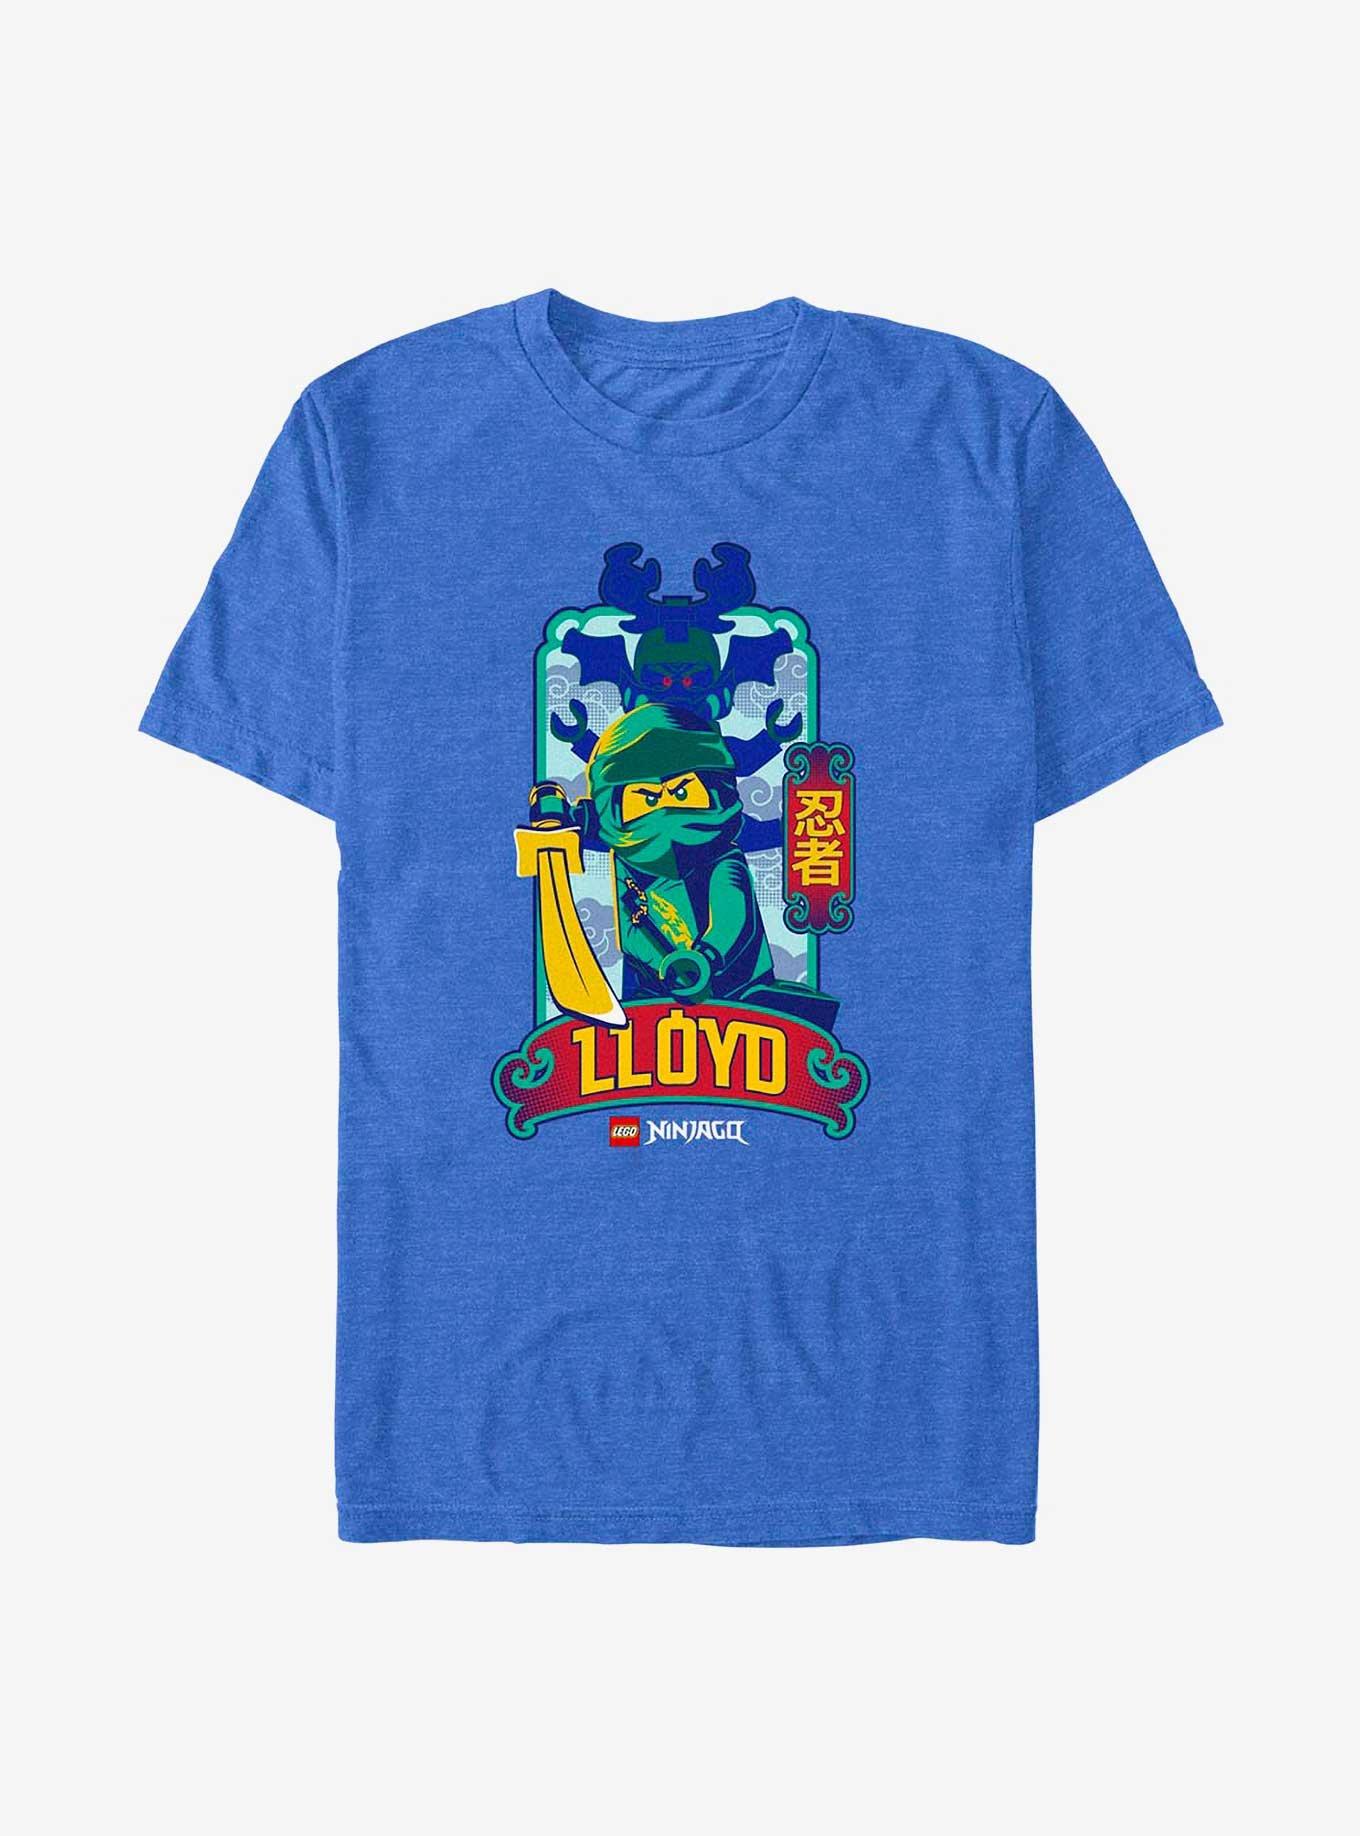 Lego Ninjago Lloyd Box Up T-Shirt